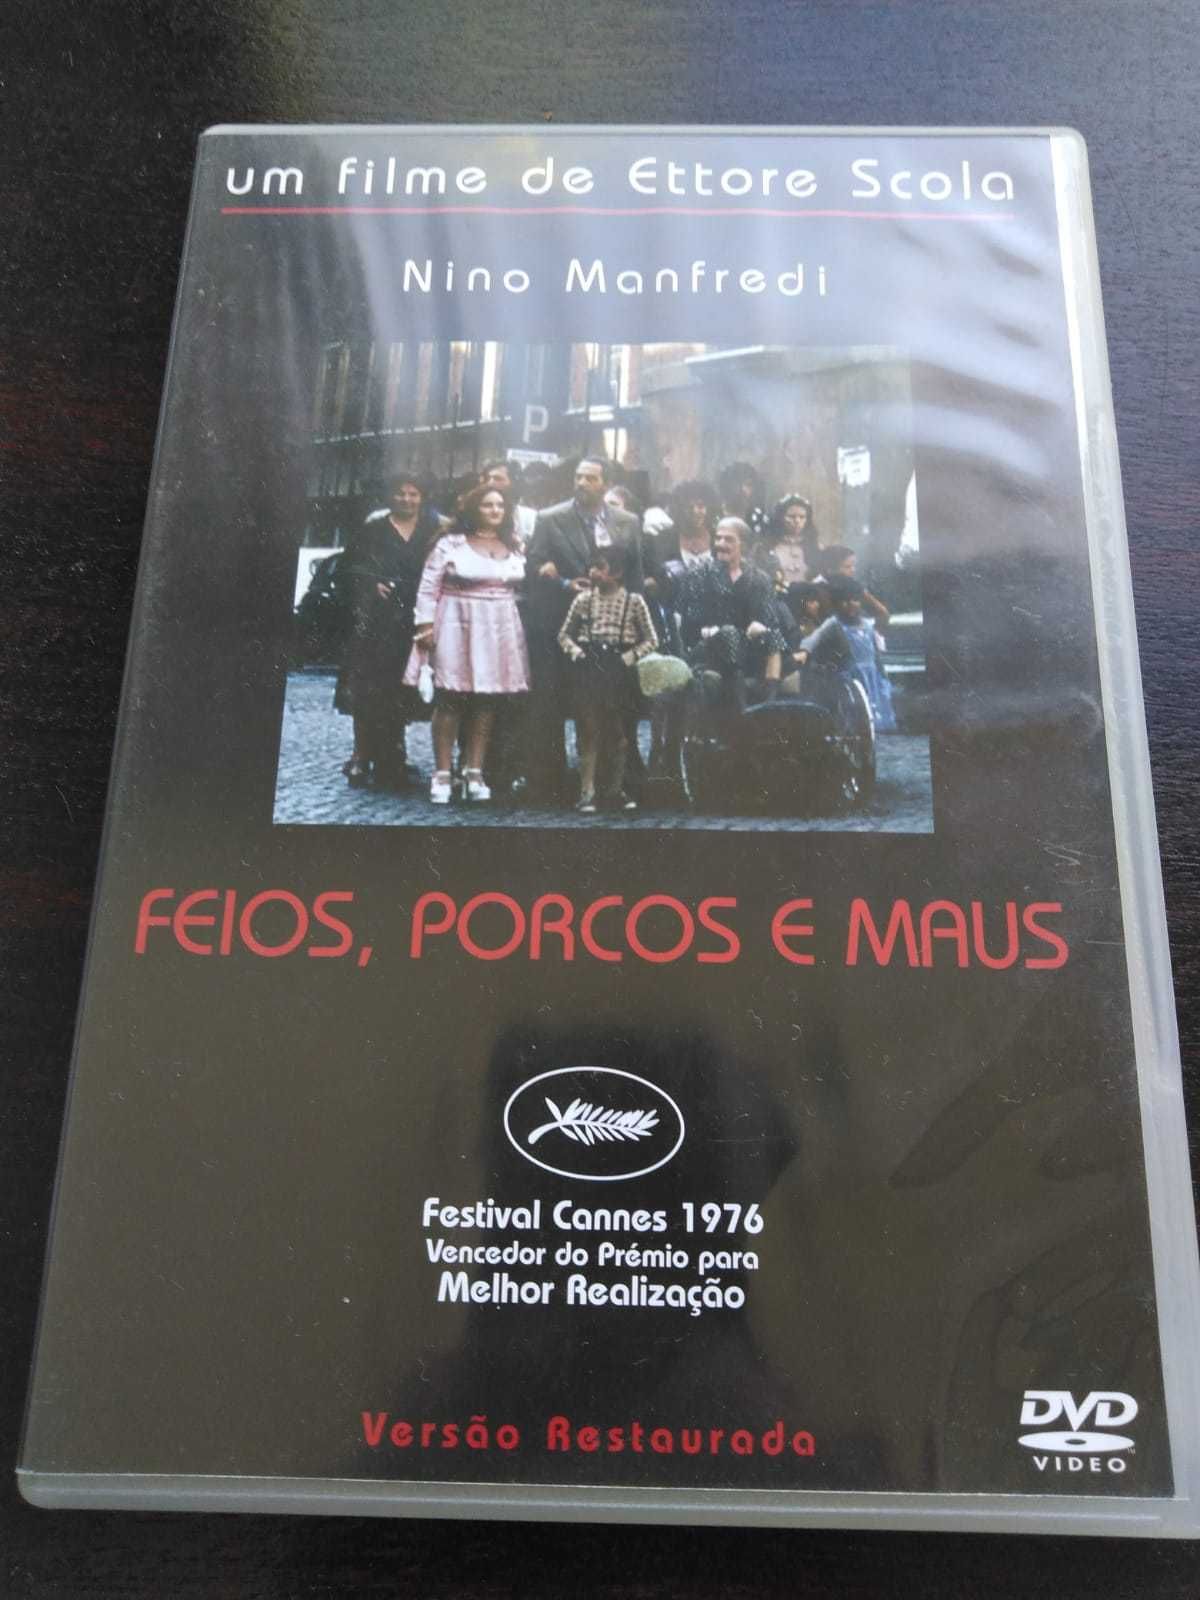 dvd: Ettore Scola “Feios, porcos e maus"